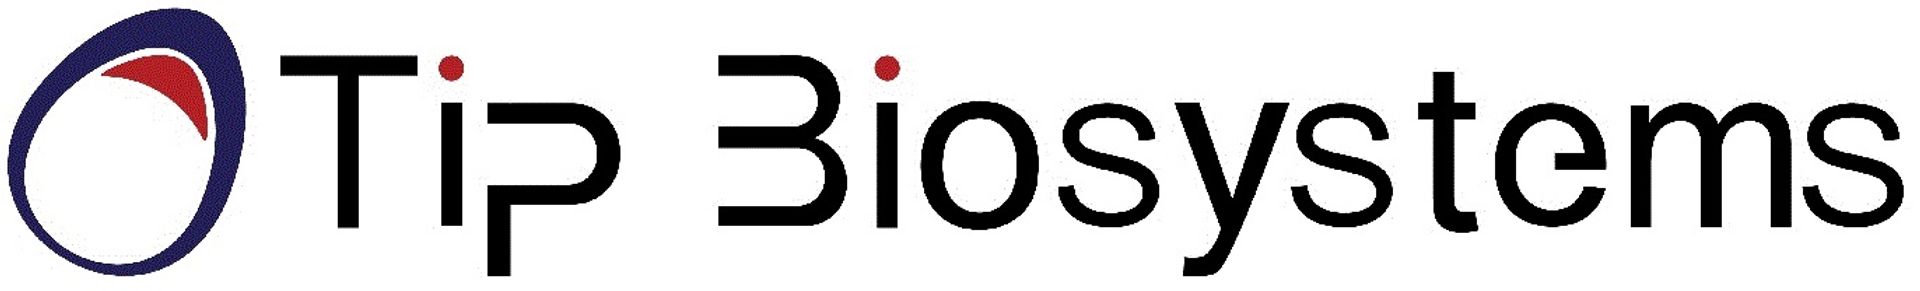 Tip Biosystems Pte Ltd